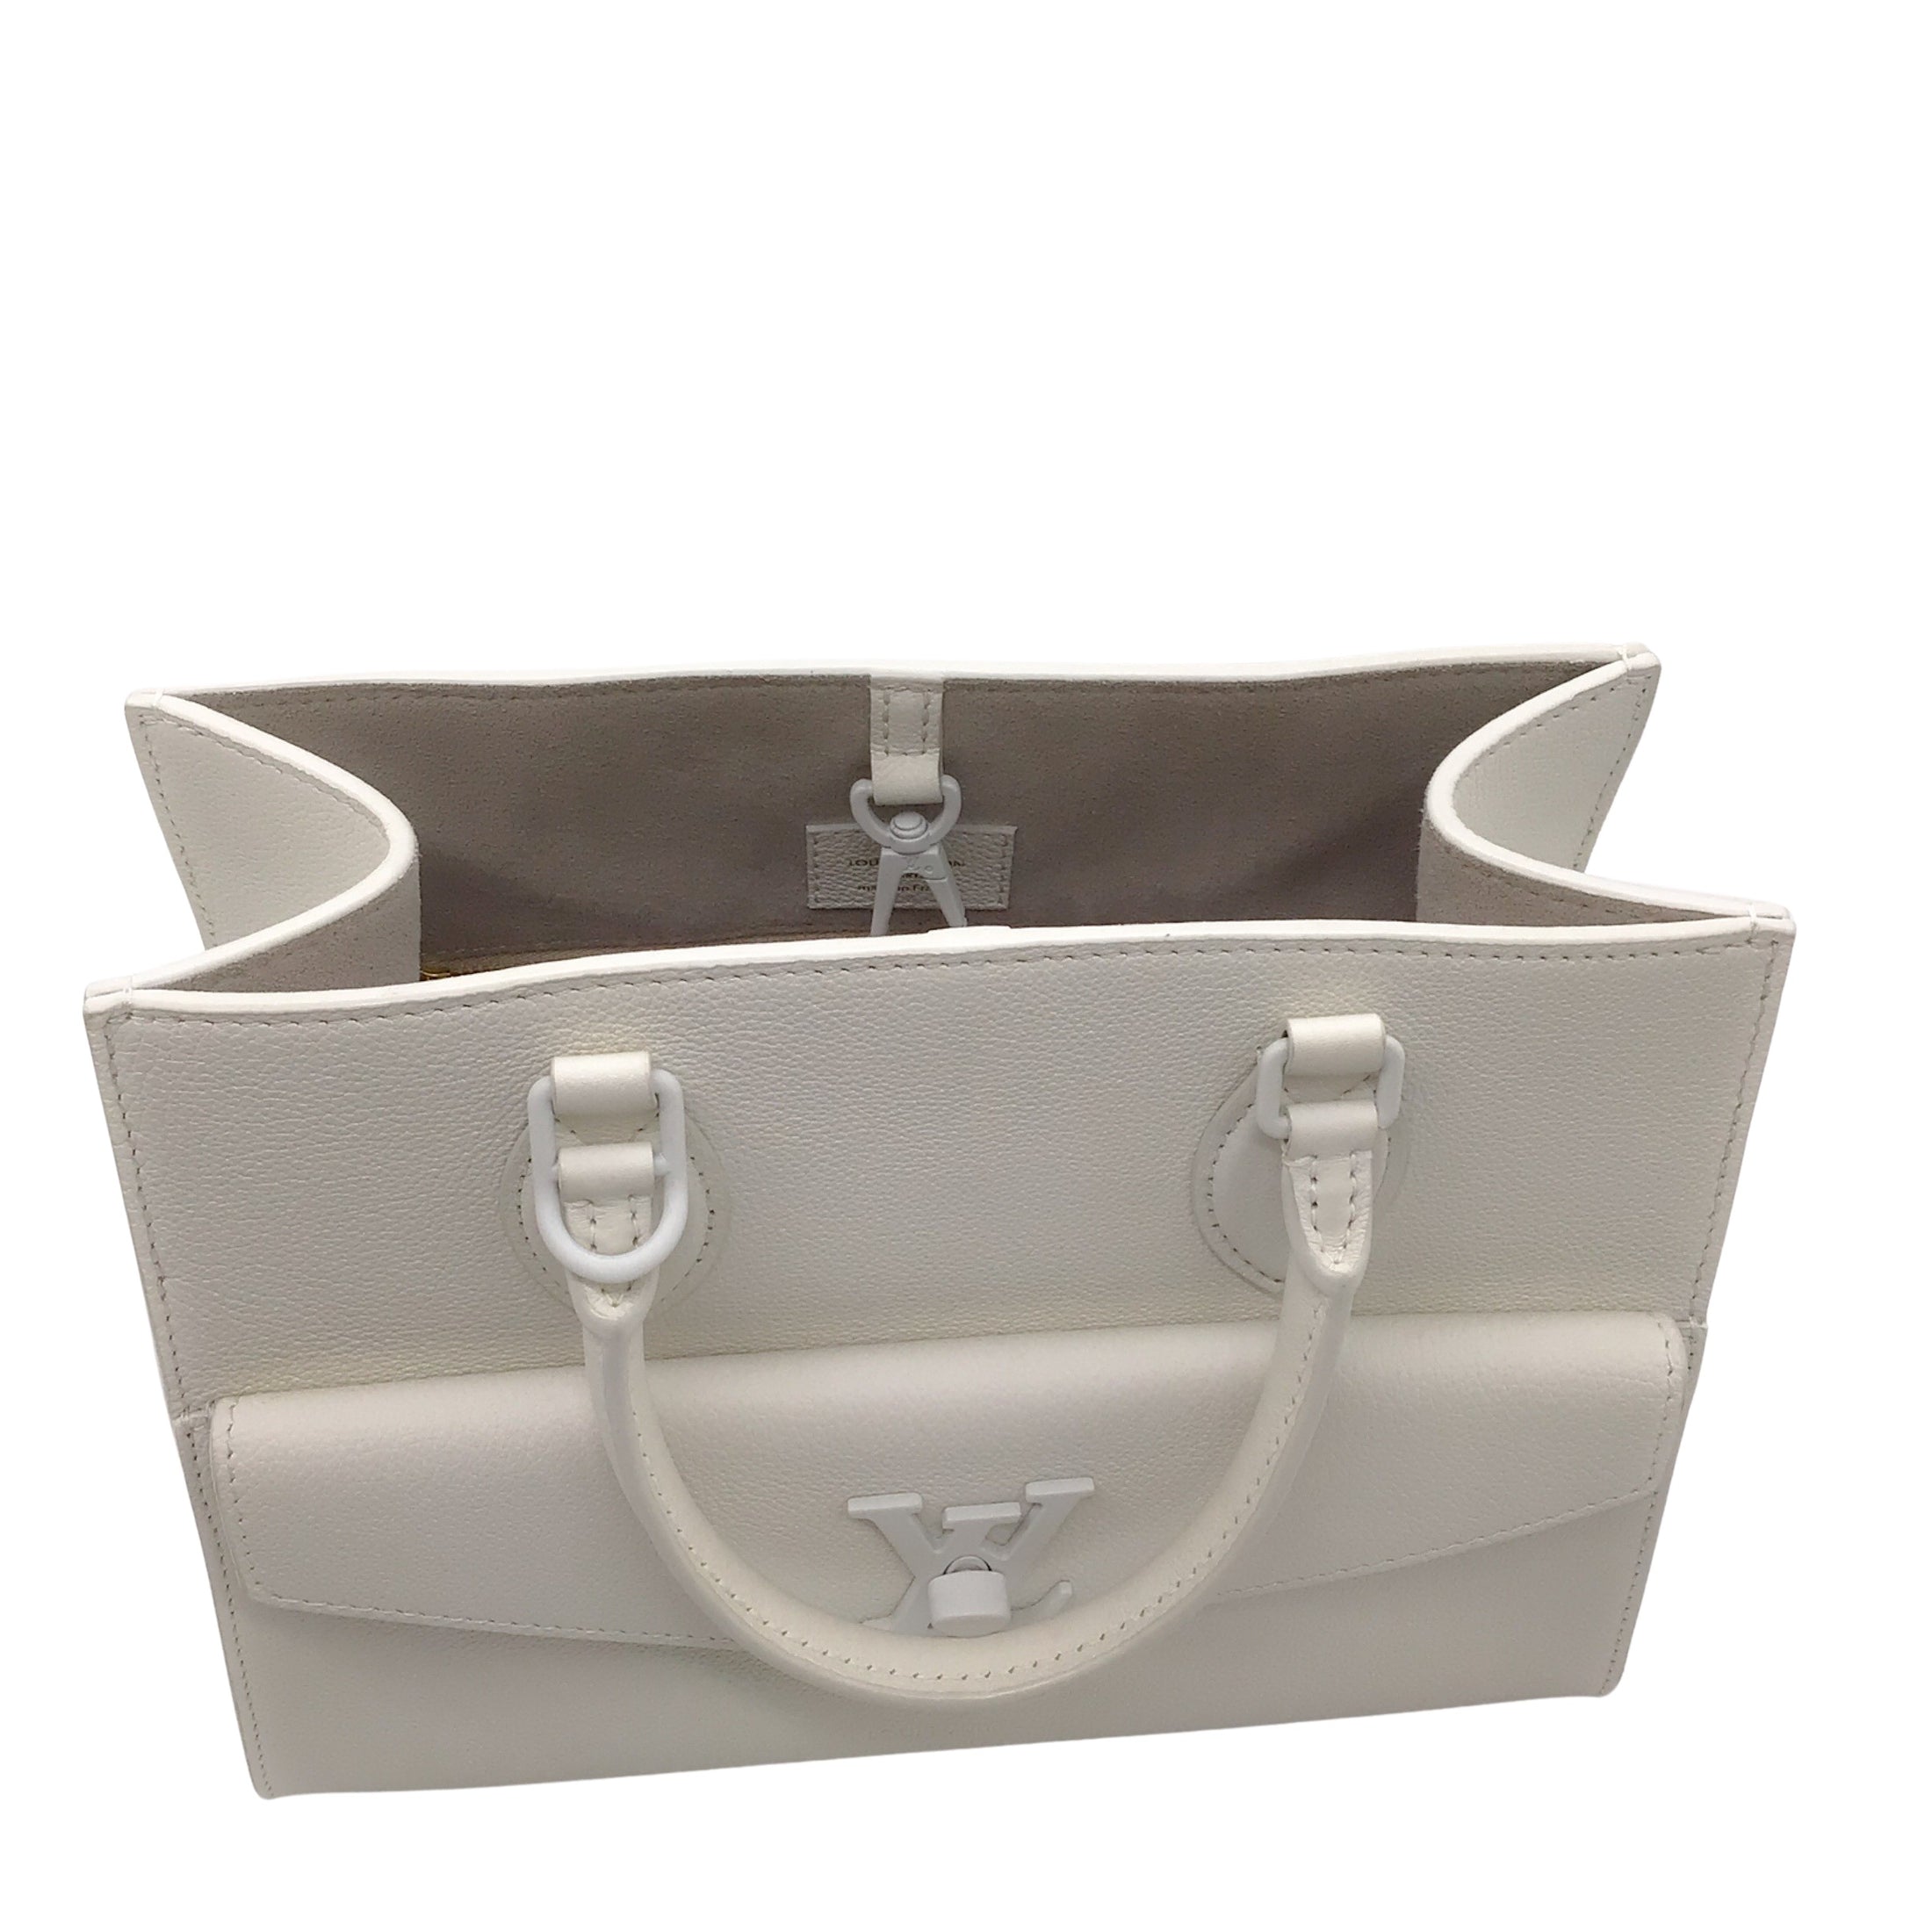 Louis Vuitton White Lockme Monochrome PM Leather Tote Handbag